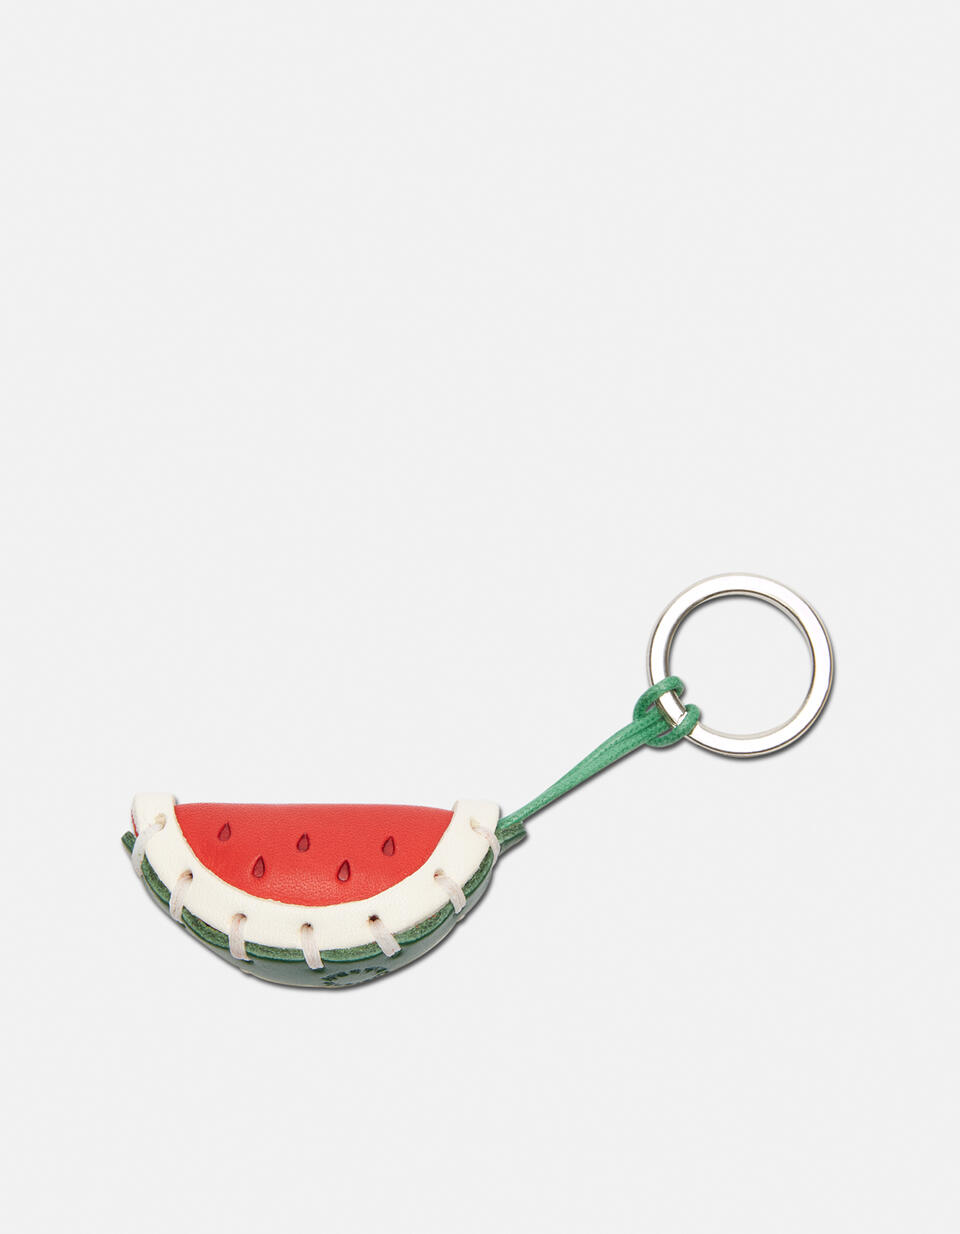 Watermelon  Leather keychain - Key holders - Women's Accessories | Accessories  - Key holders - Women's Accessories | AccessoriesCuoieria Fiorentina